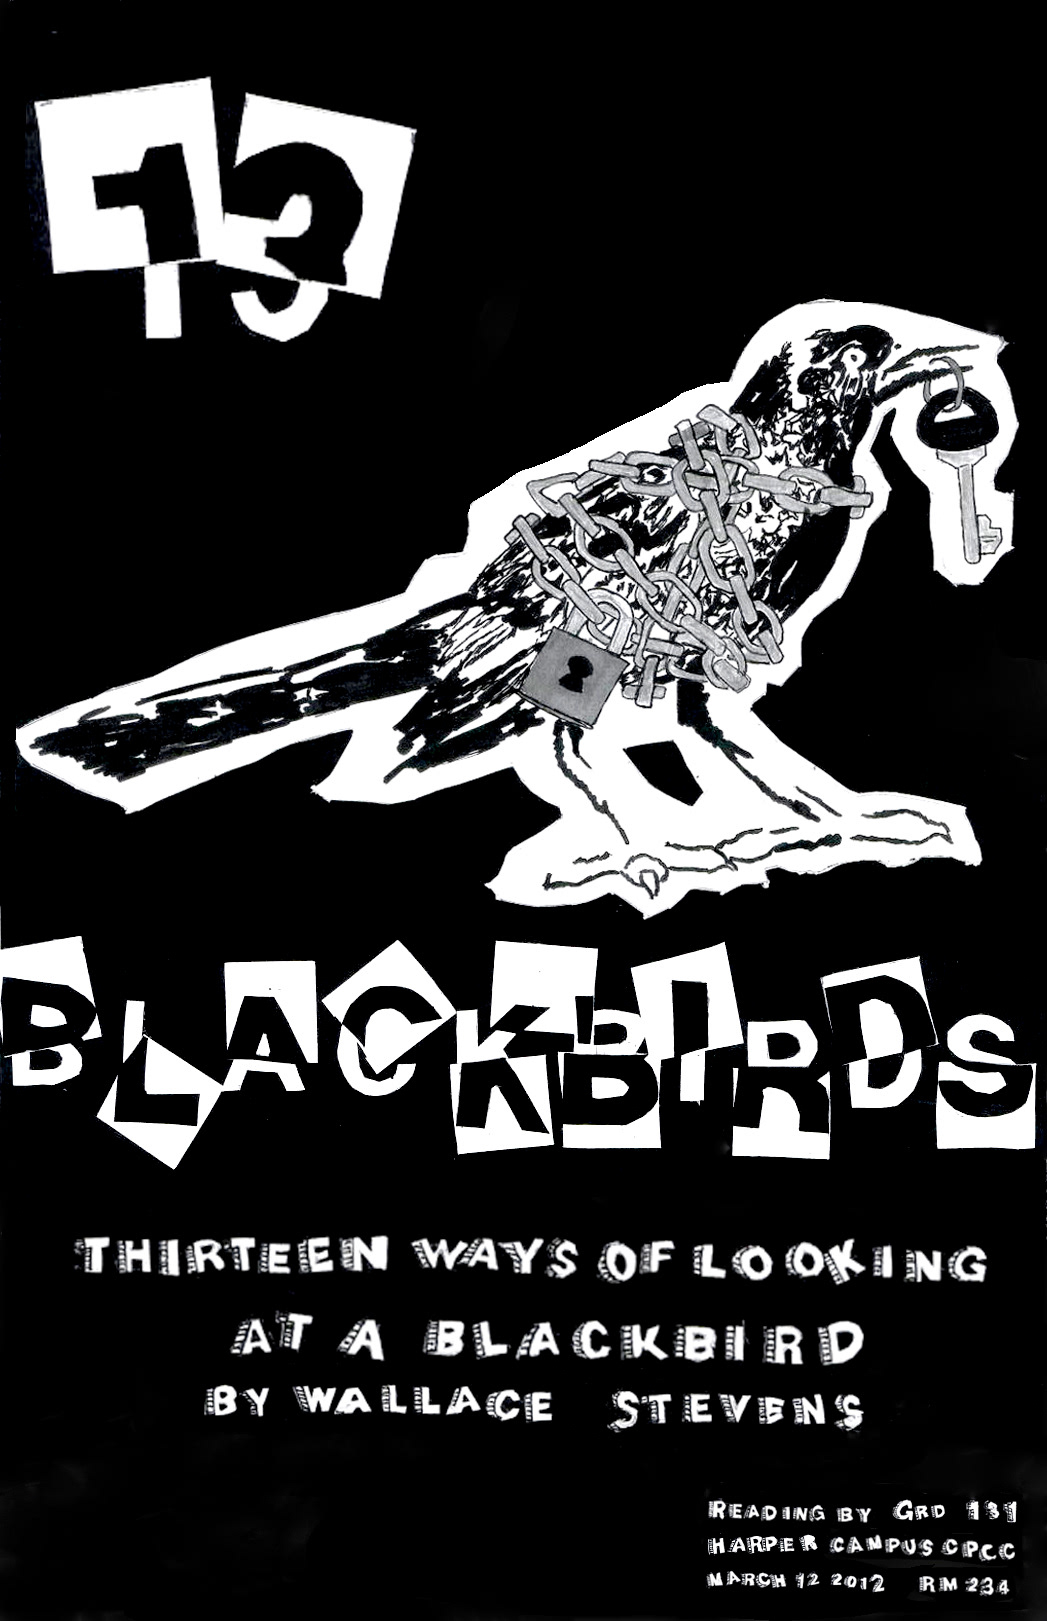 wallace stevens 13 thirteen blackbirds graphic design